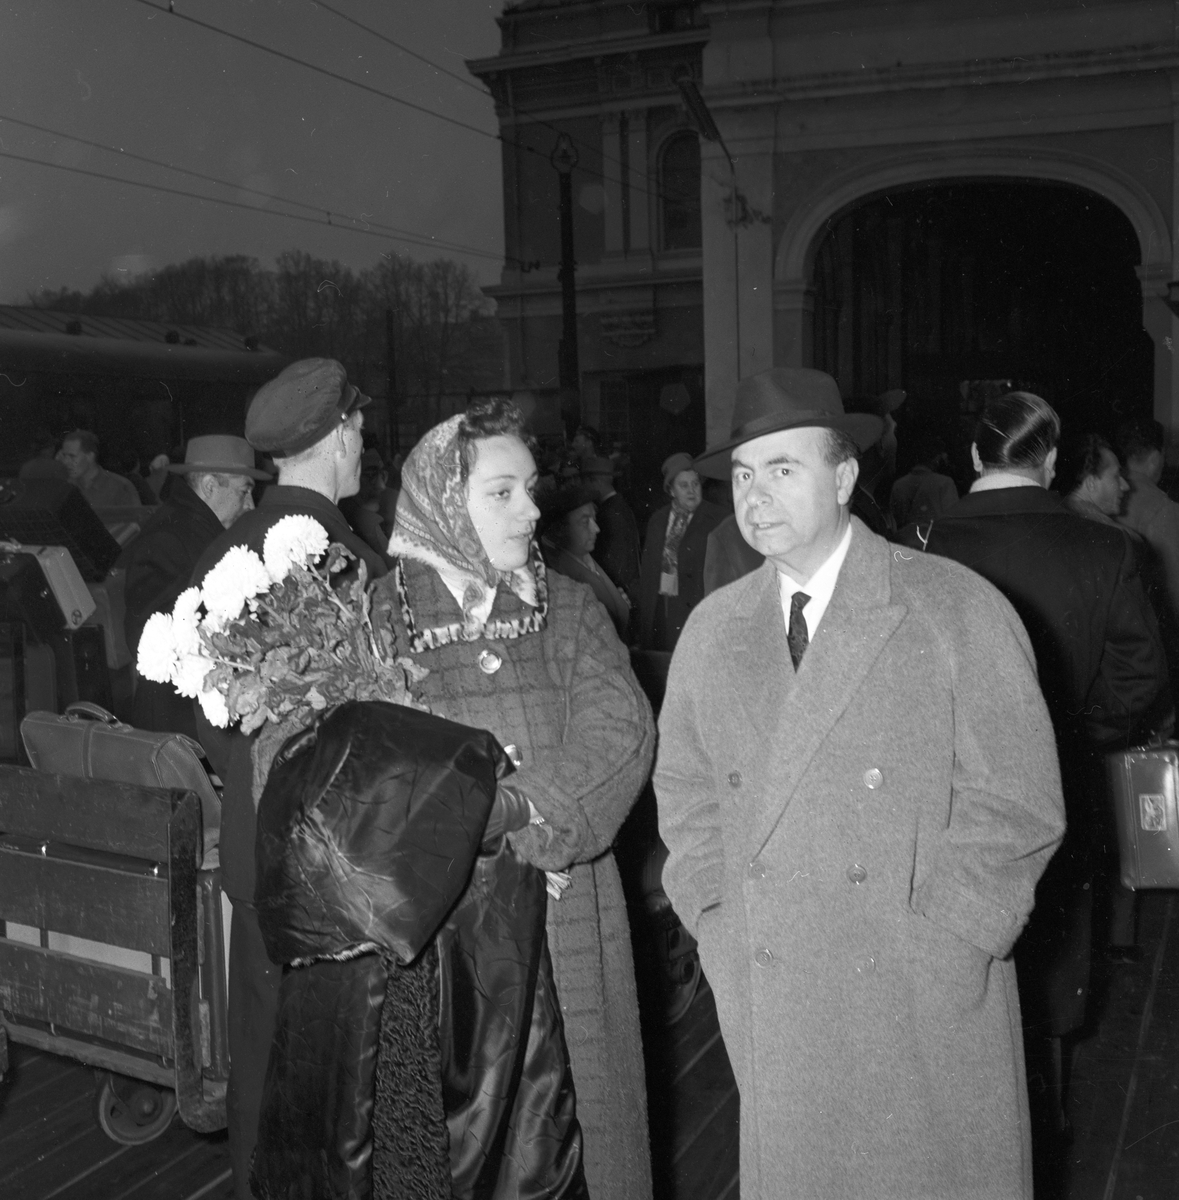 Kvinne og mann på togperrong, operasangere. Italiensk opera i Oslo. Fotografert 1958.